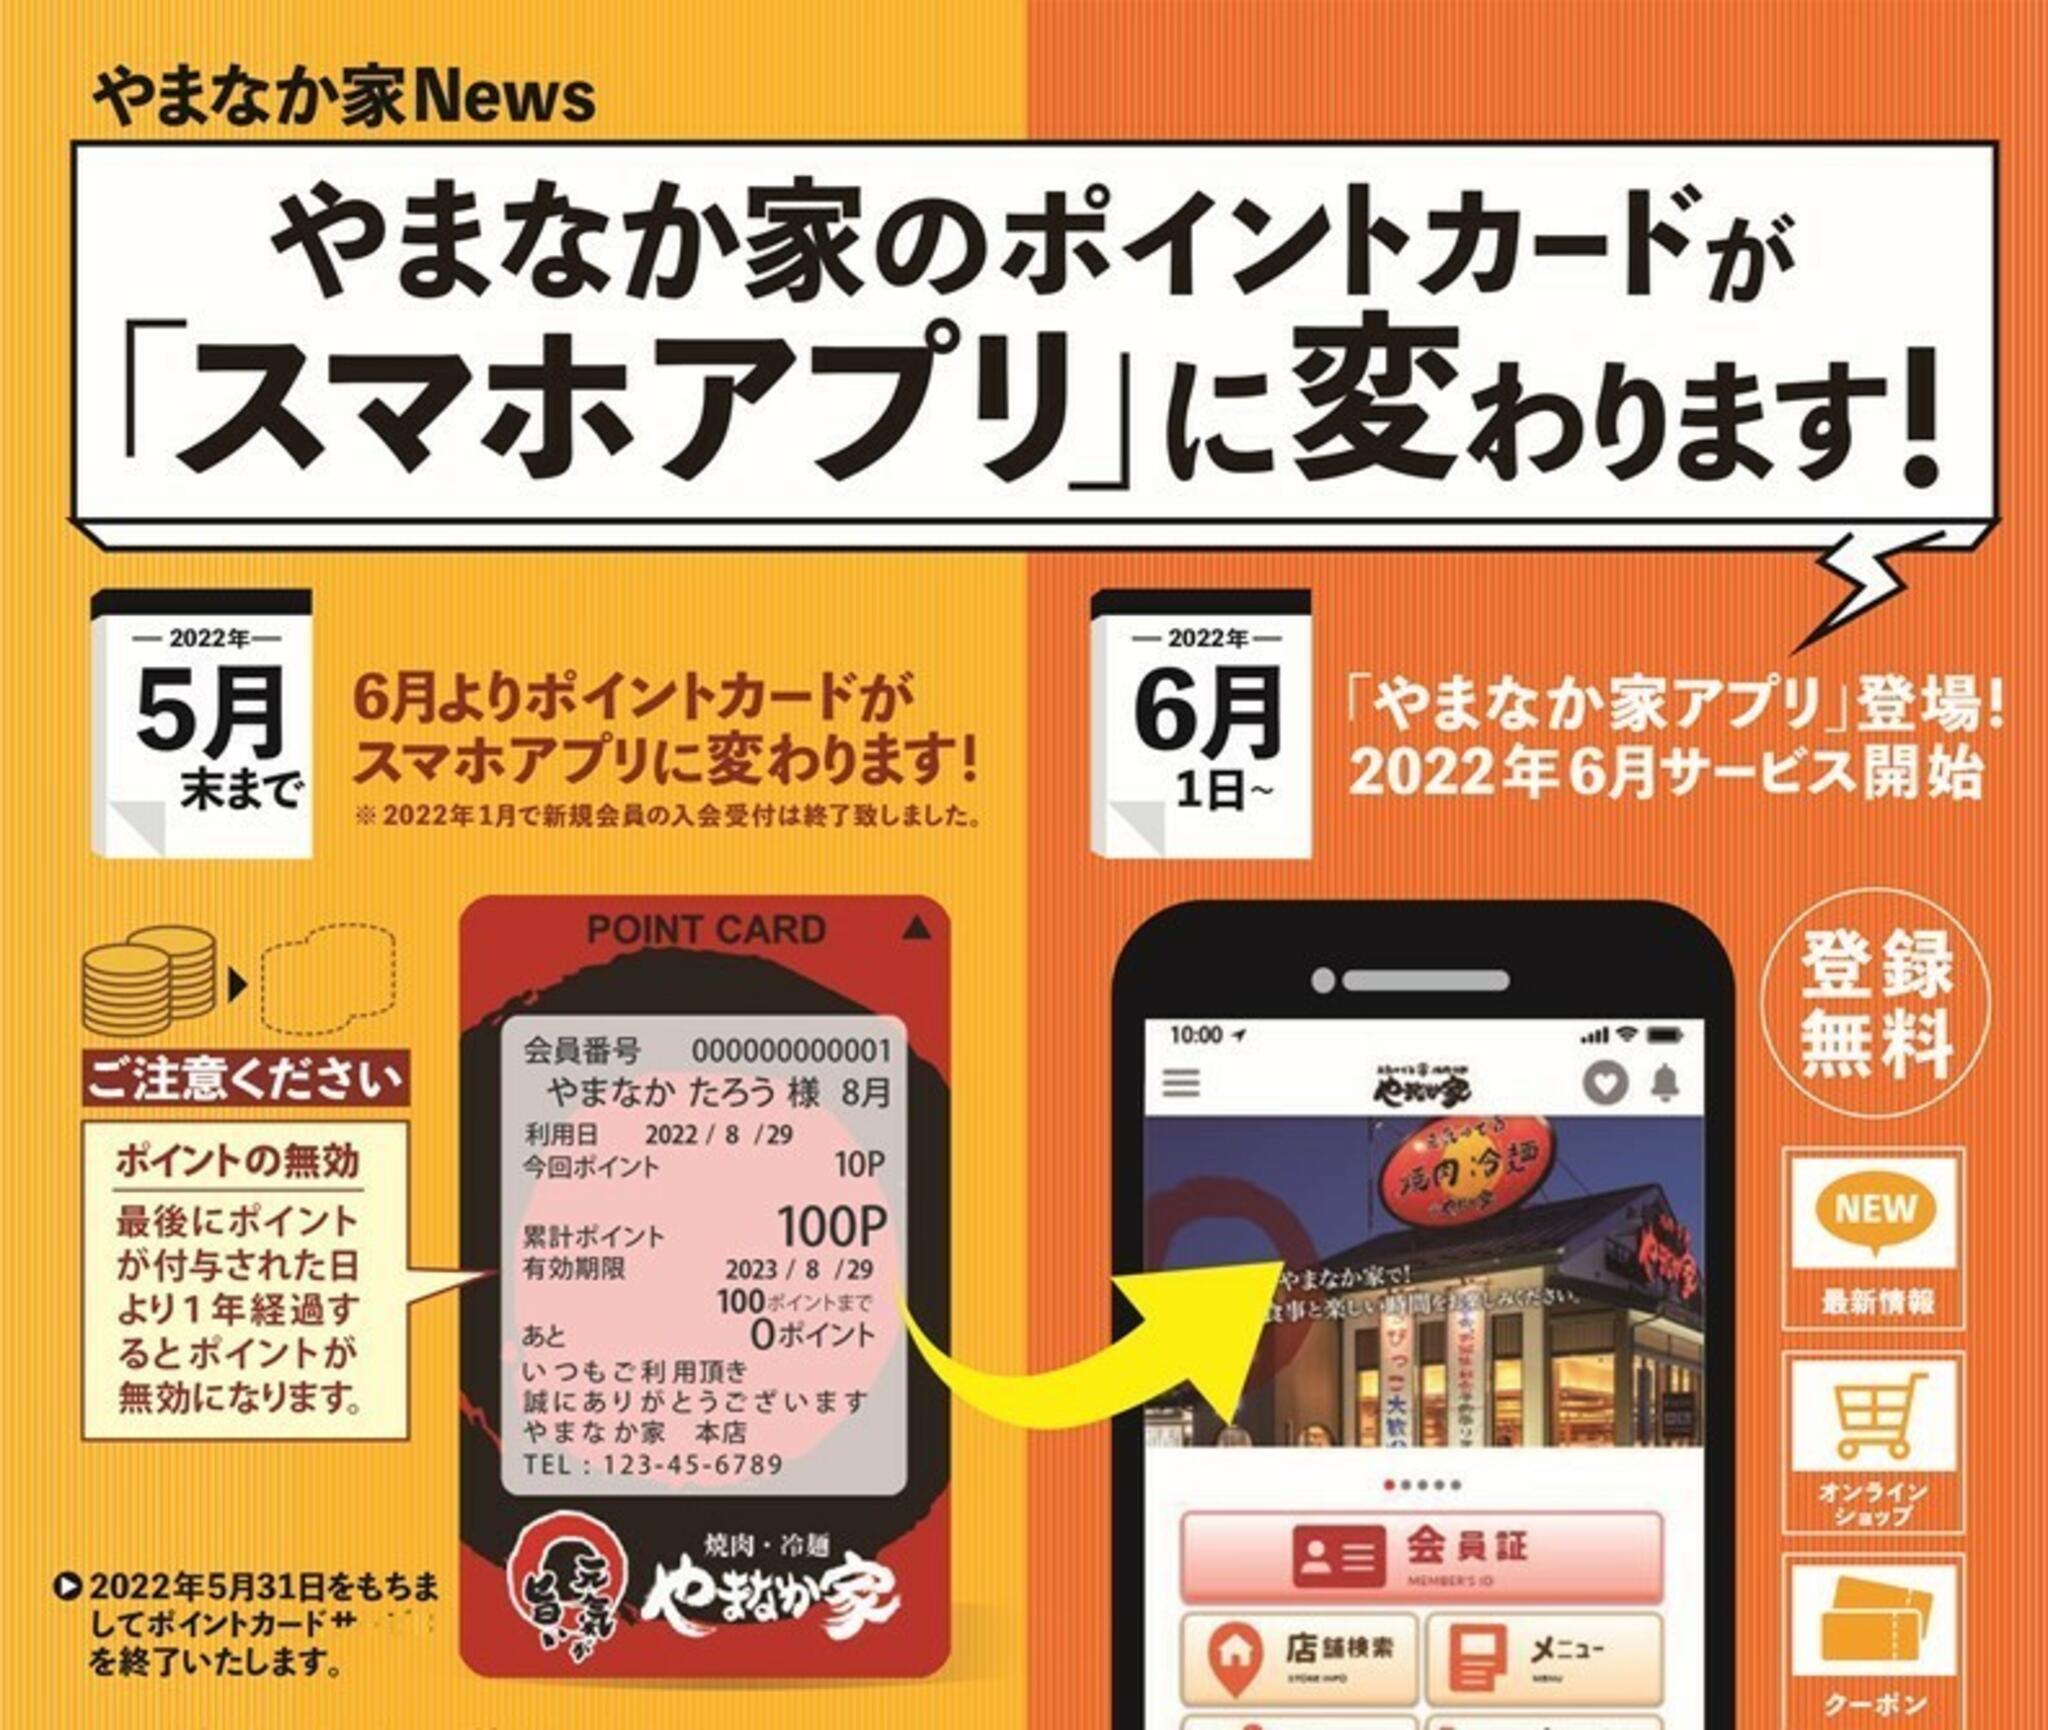 焼肉冷麺やまなか家 上田バイパス店からのお知らせ(【やまなか家のポイントカードがスマホアプリに変わります！】)に関する写真